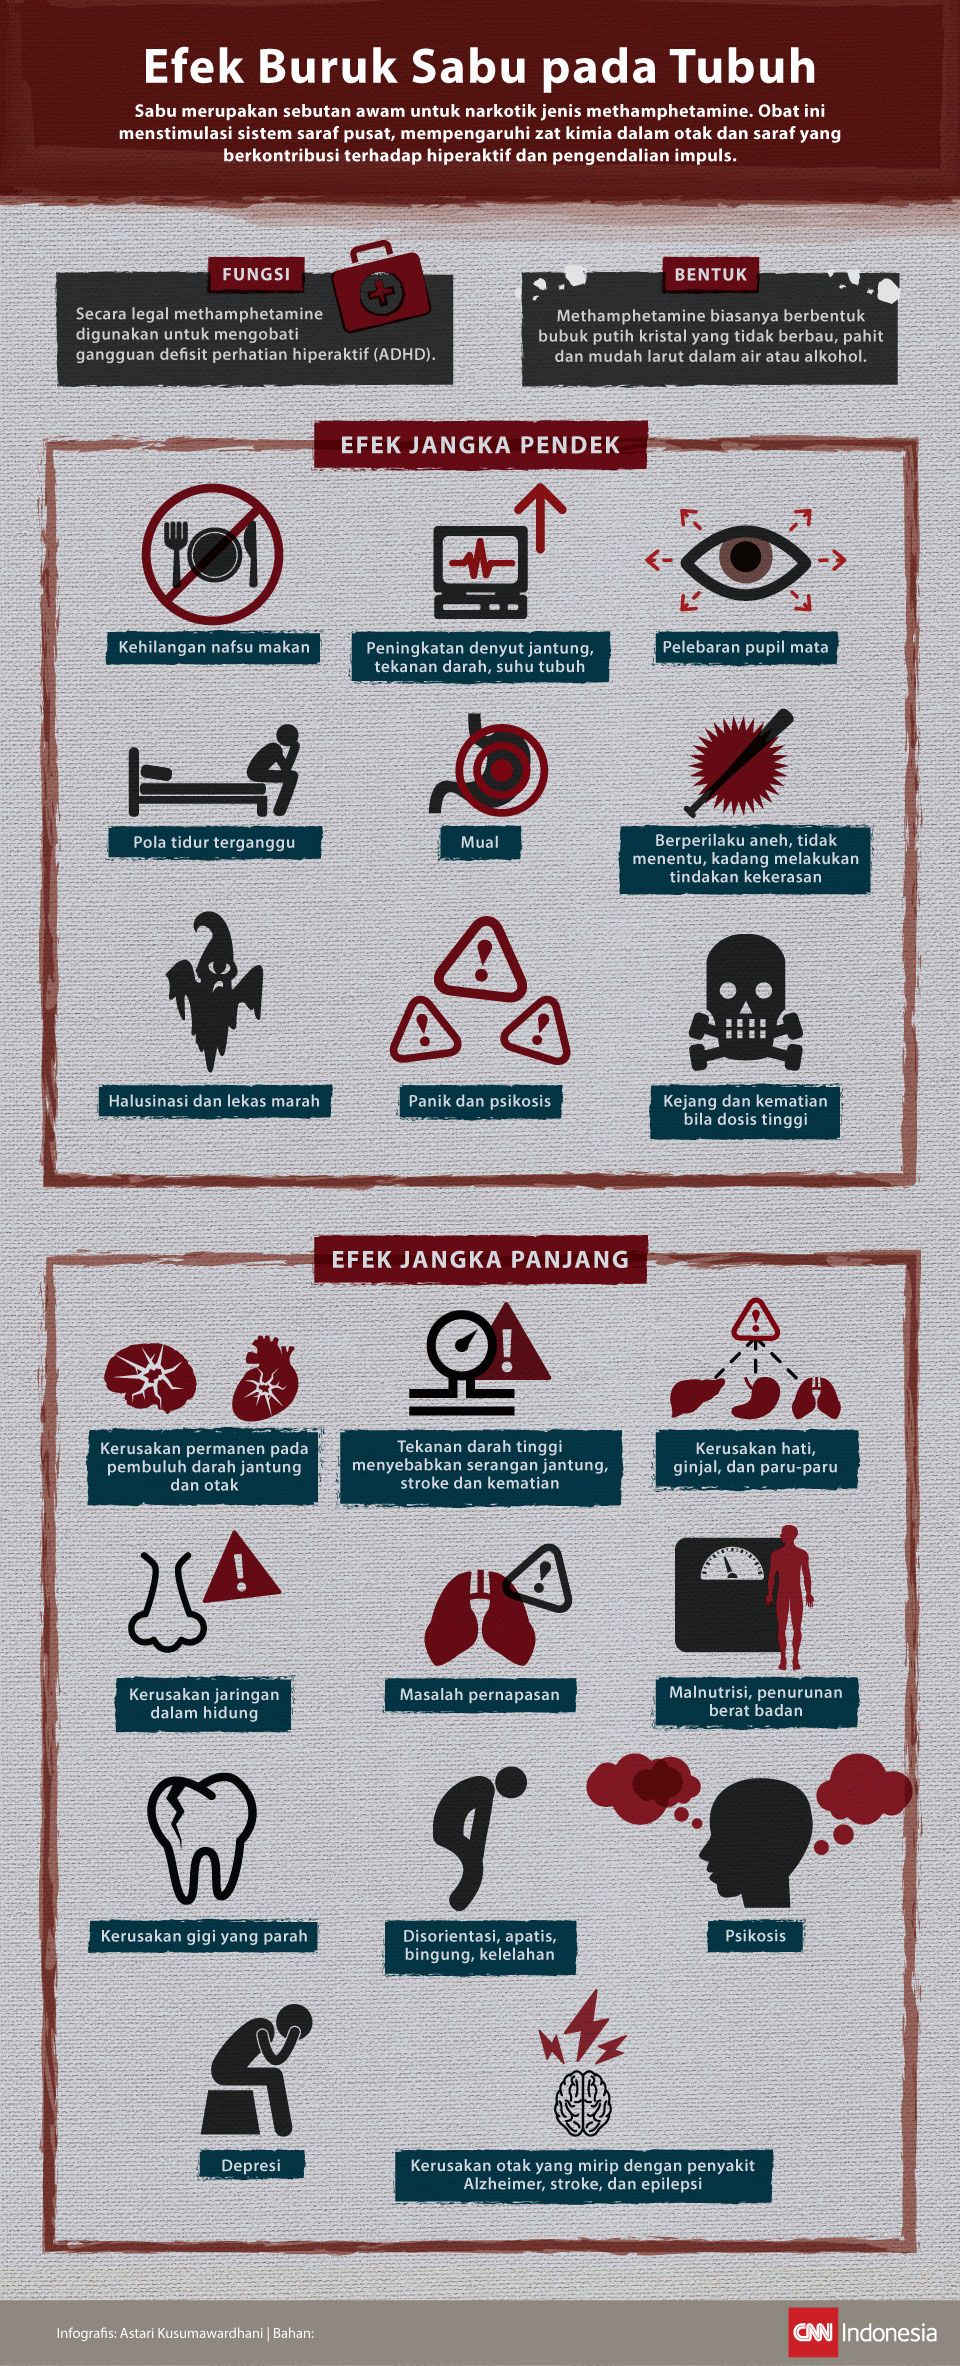 Infografis mengenai efek buruk sabu pada tubuh.